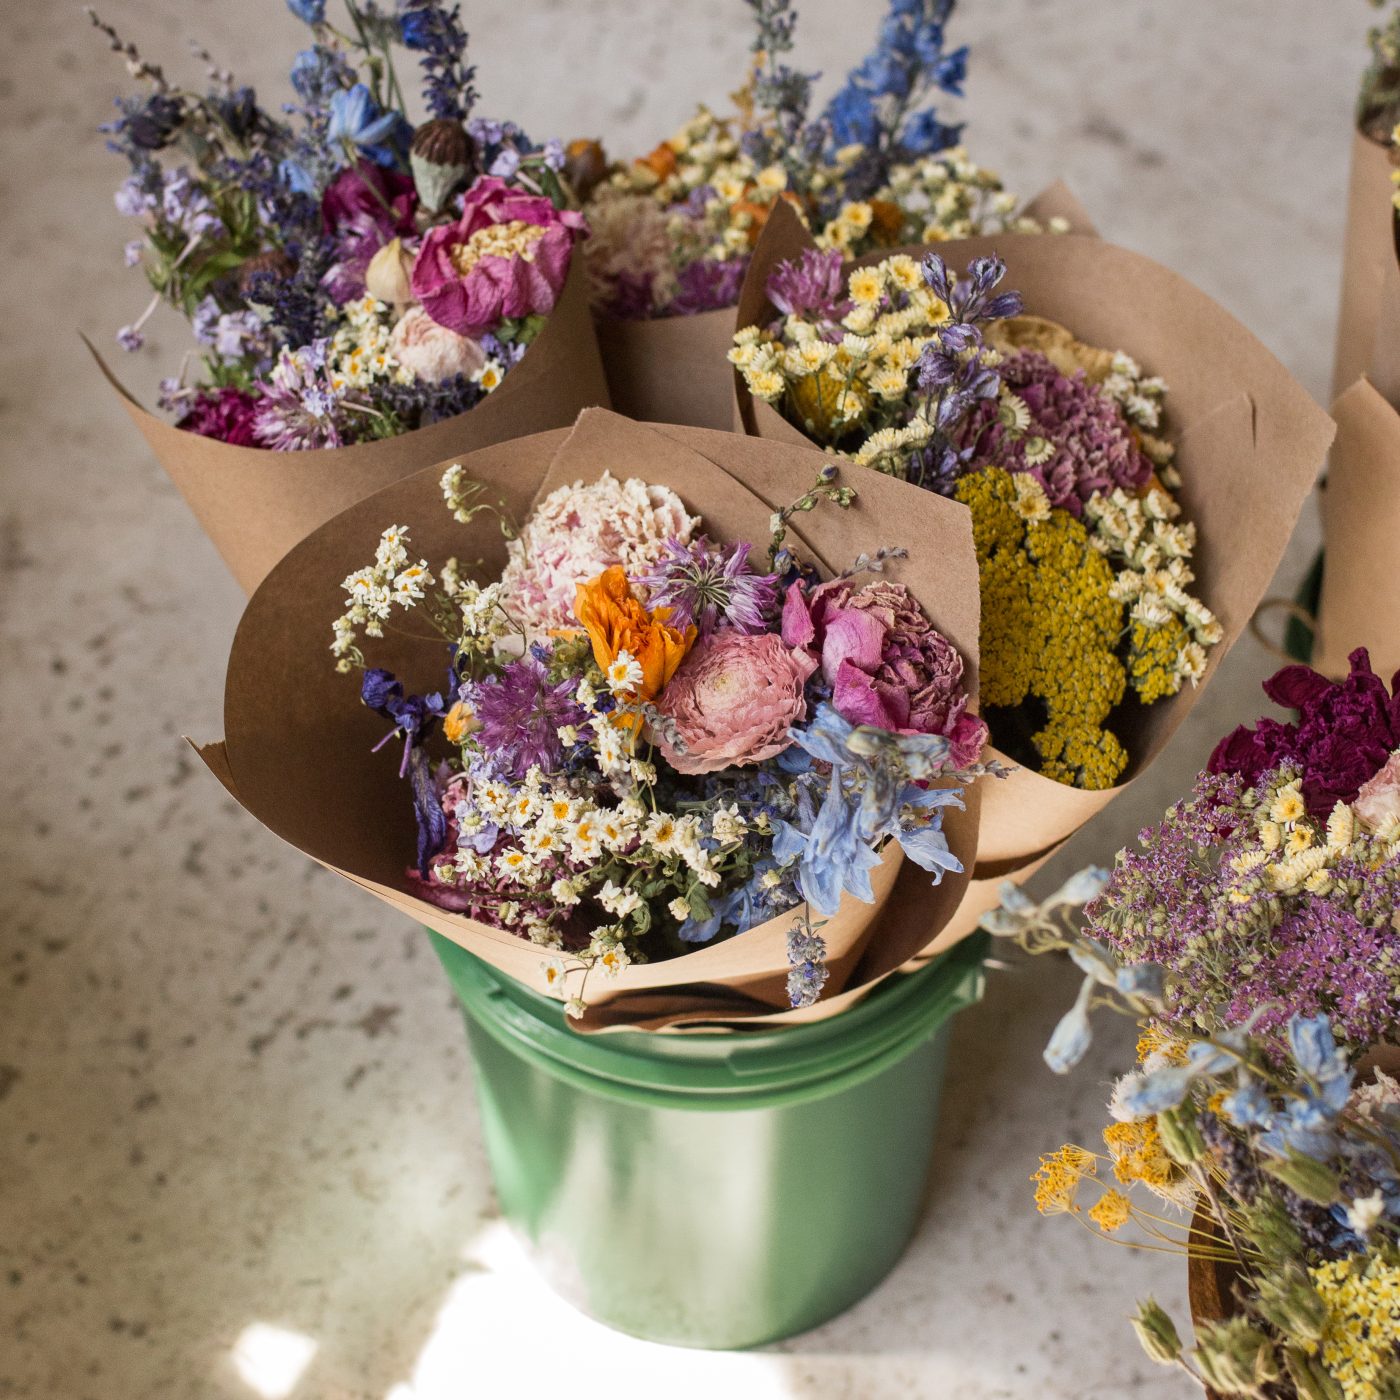 Créer un jardin de fleurs à couper pour faire des bouquets - Conseils